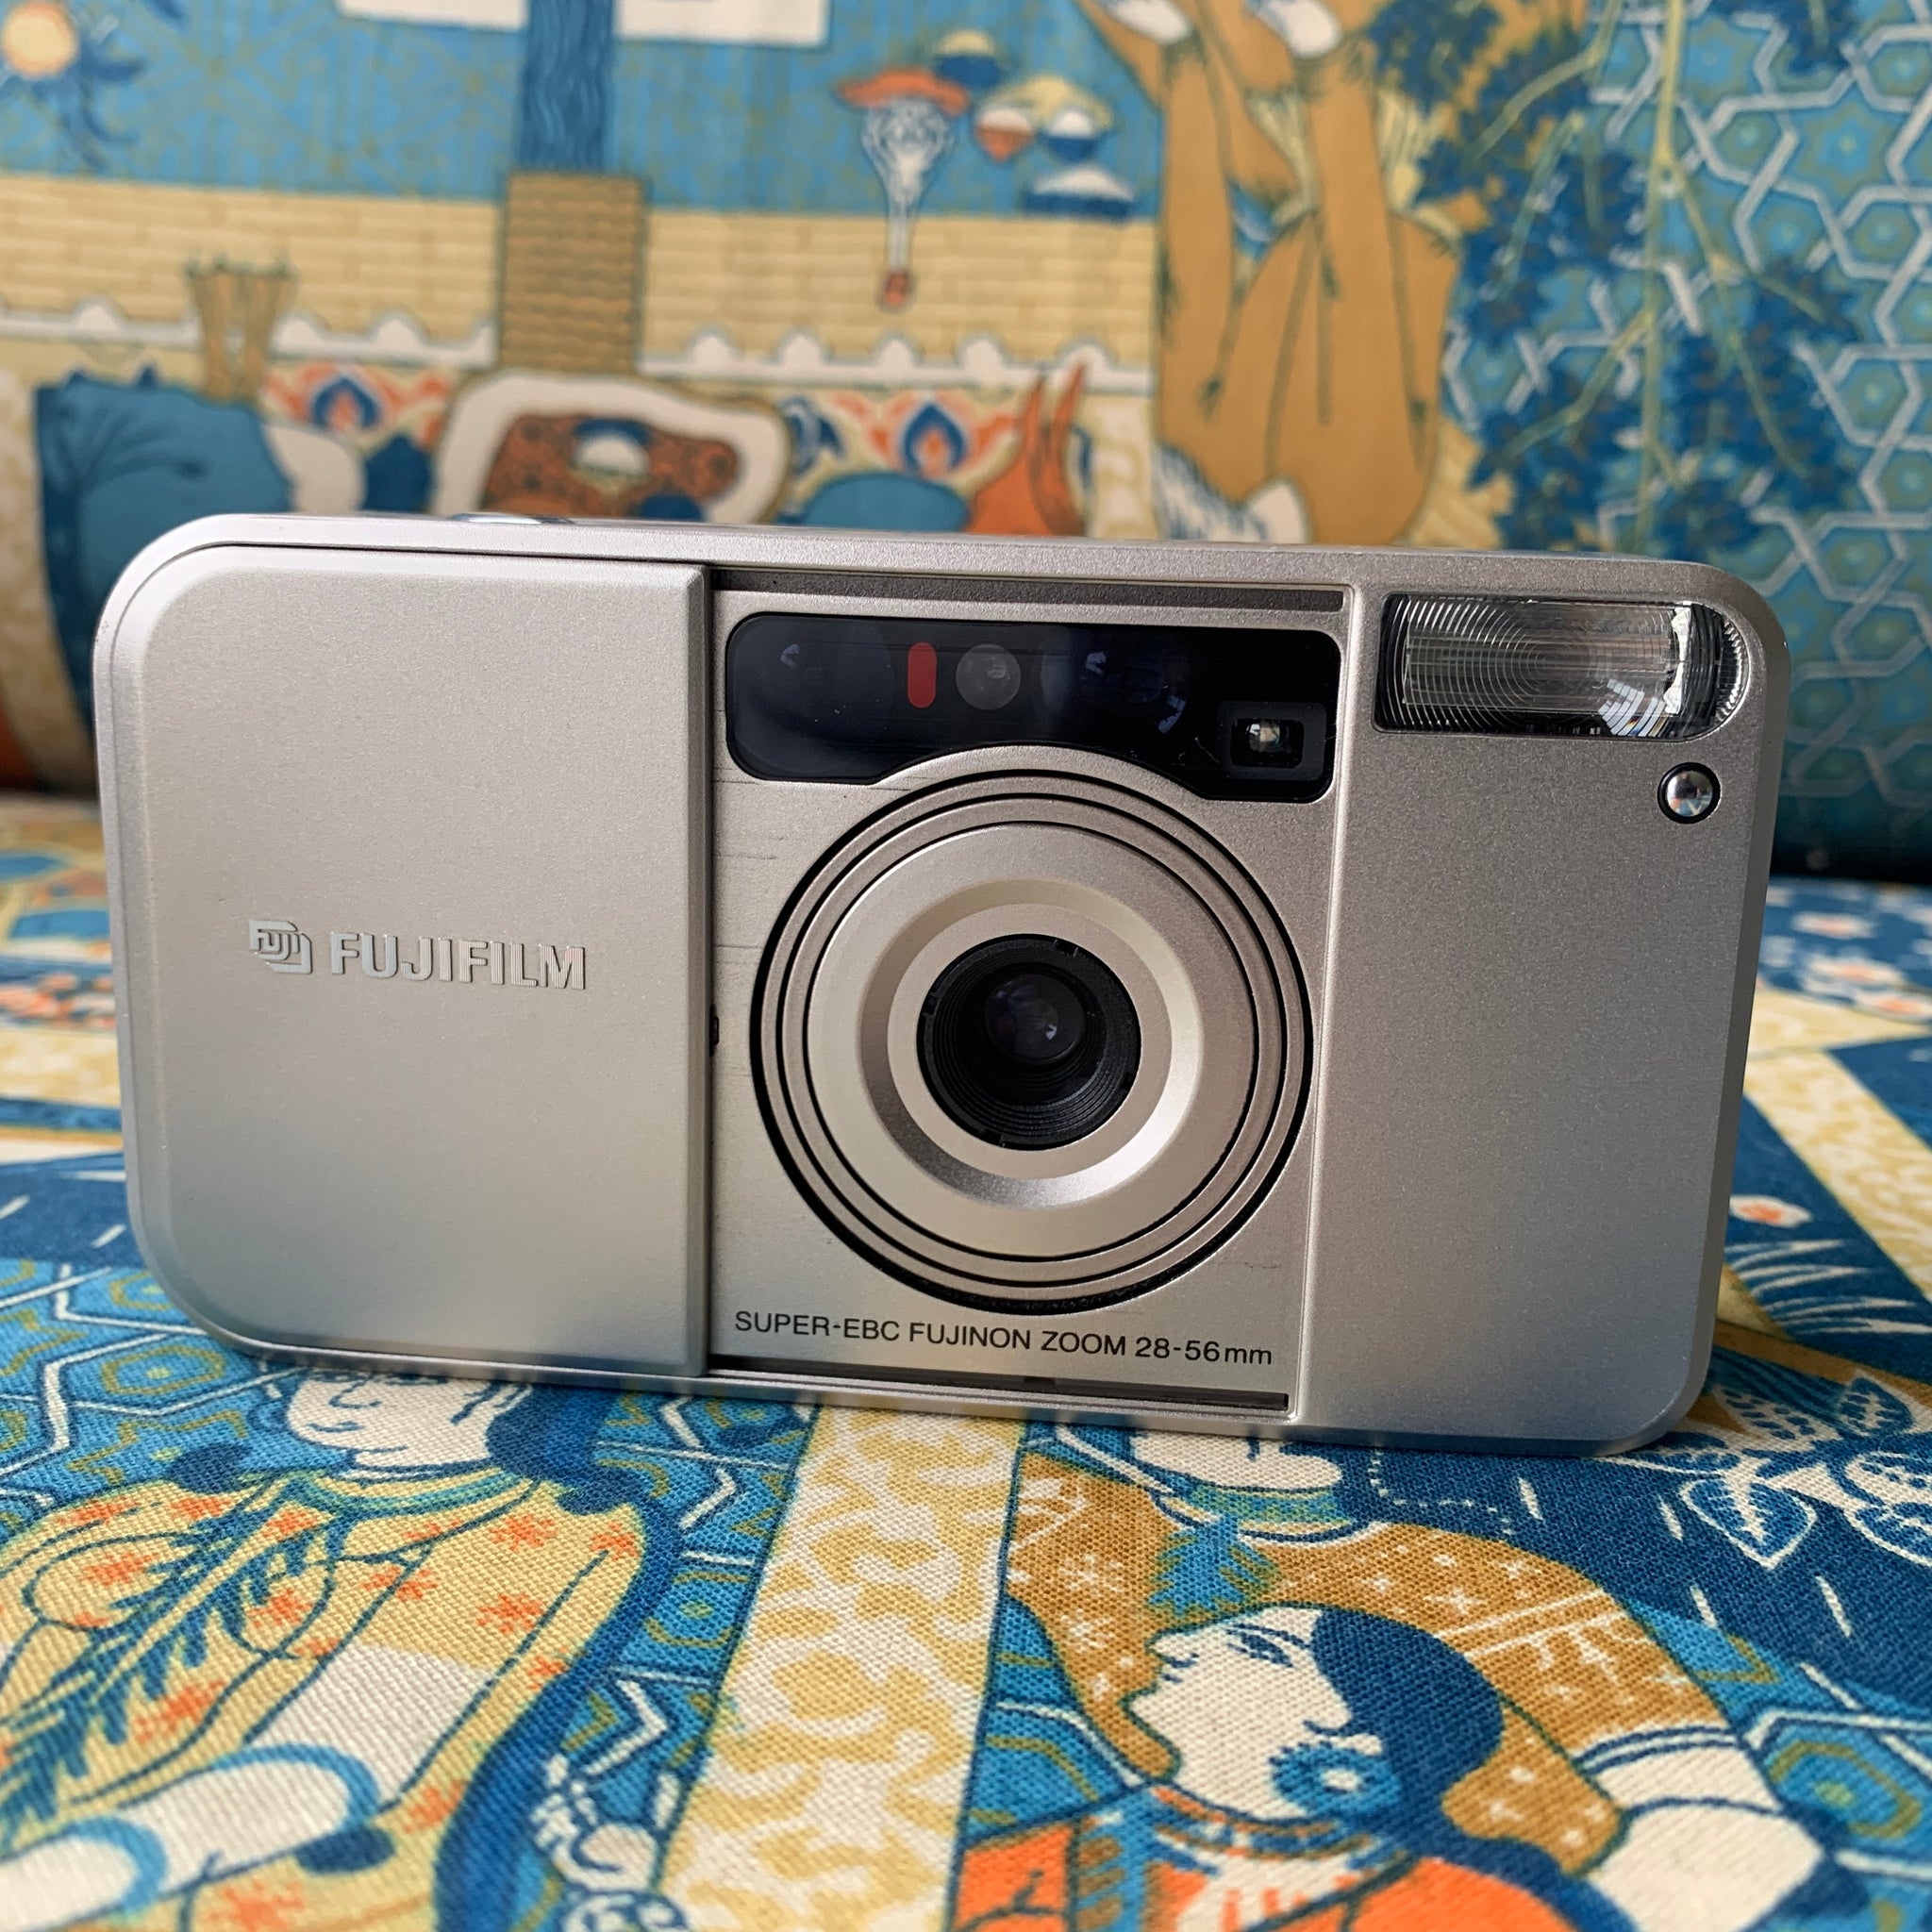 Fujifilm DL Super Mini Zoom – My 35